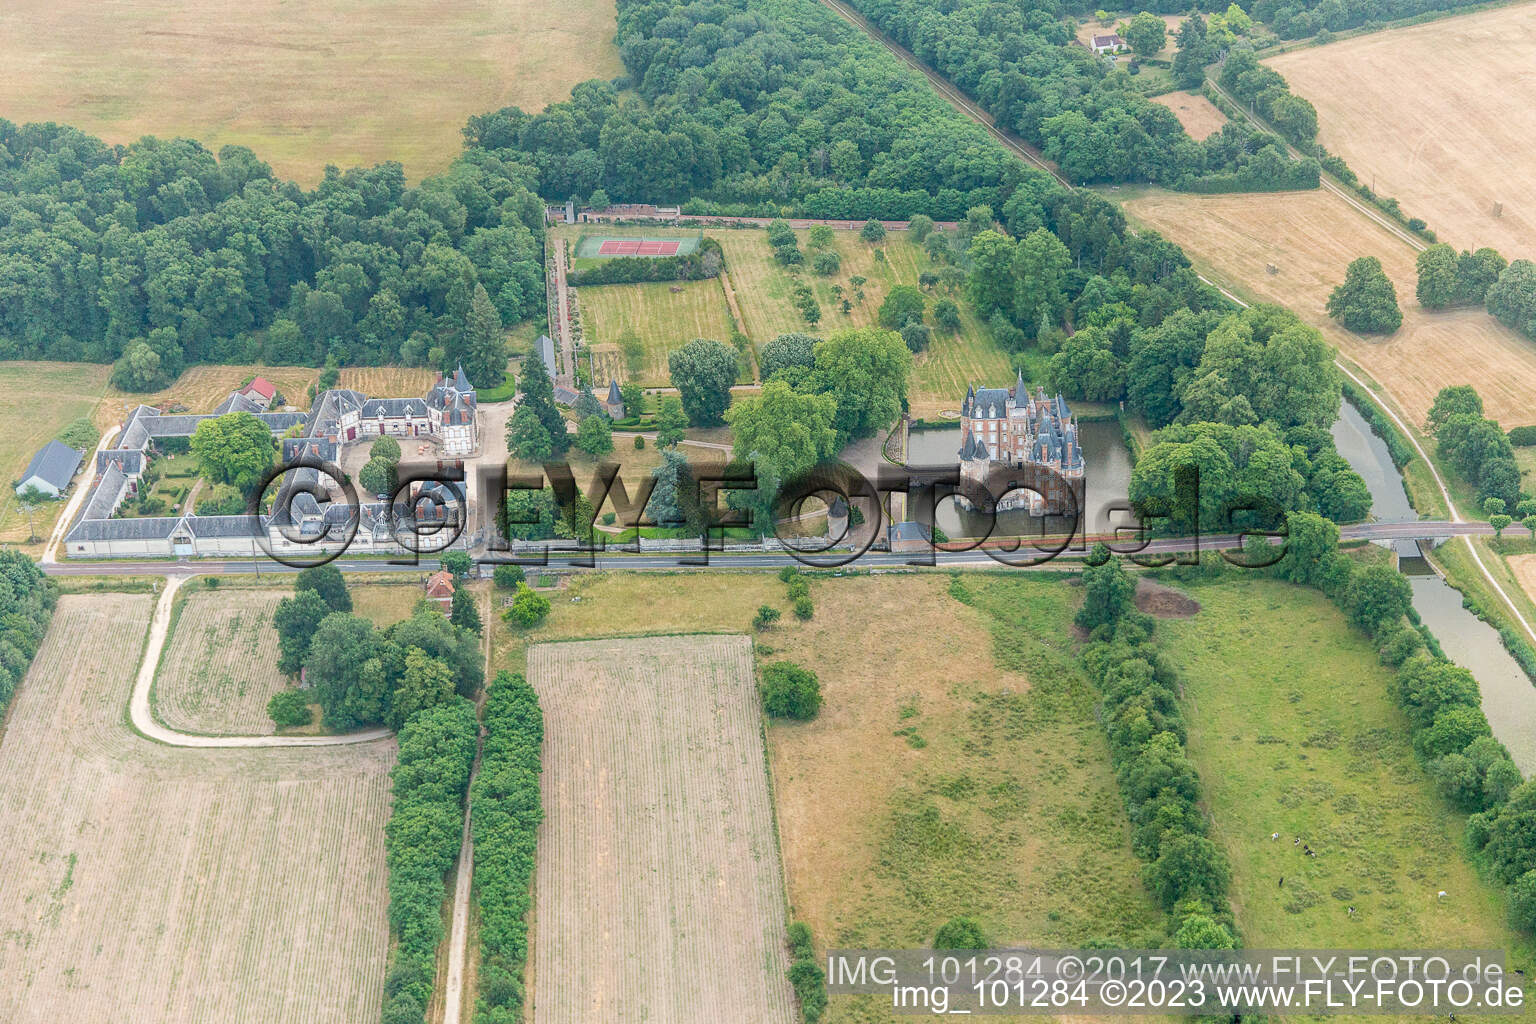 Building and castle park systems of water castle Chateau de Combreux in Combreux in Centre-Val de Loire, France out of the air